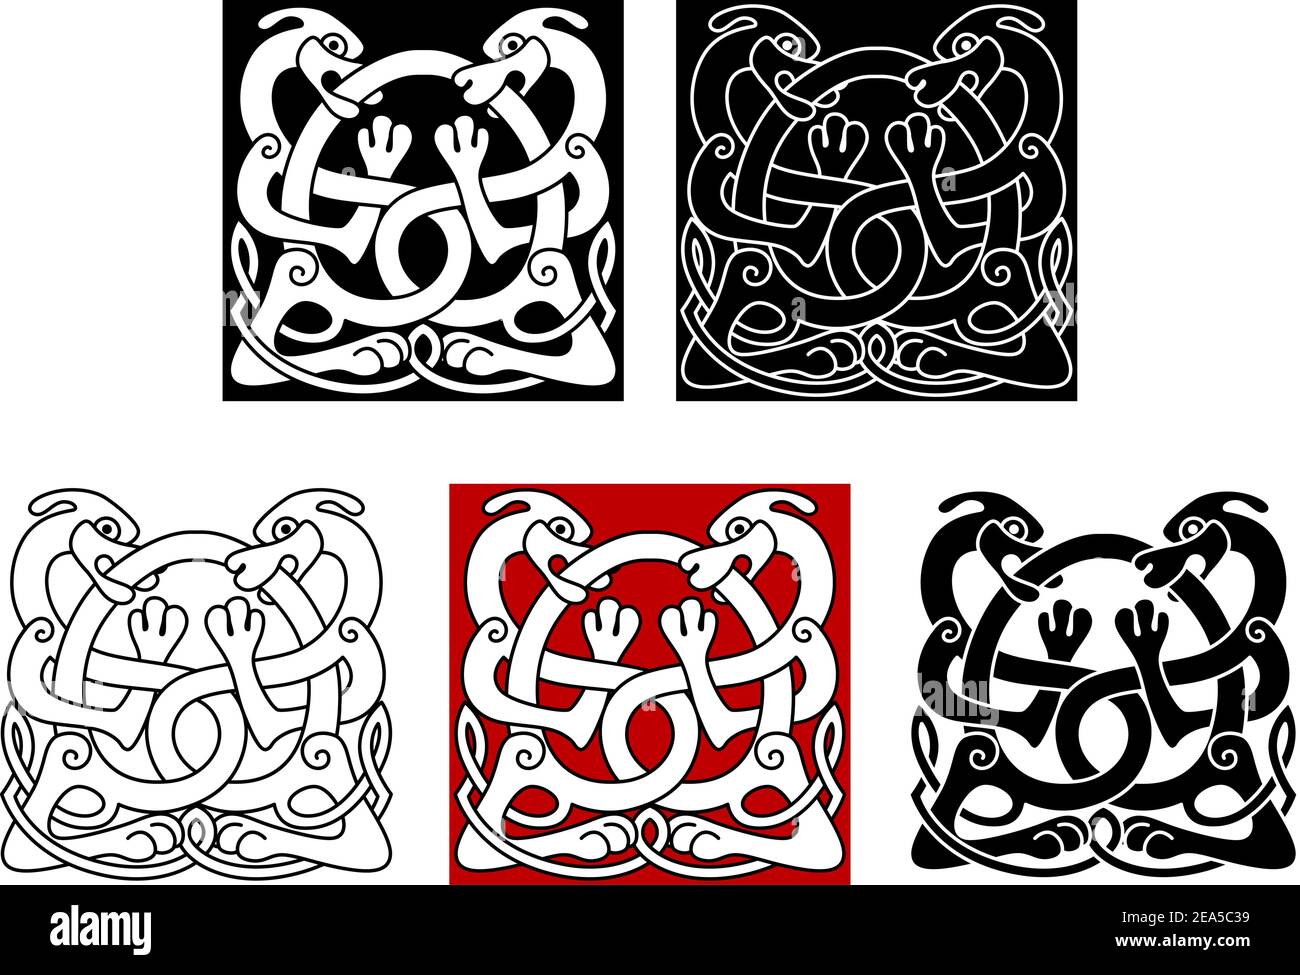 Hunde mit keltischen Ornamenten für mittelalterliches oder Tattoo Design Stock Vektor